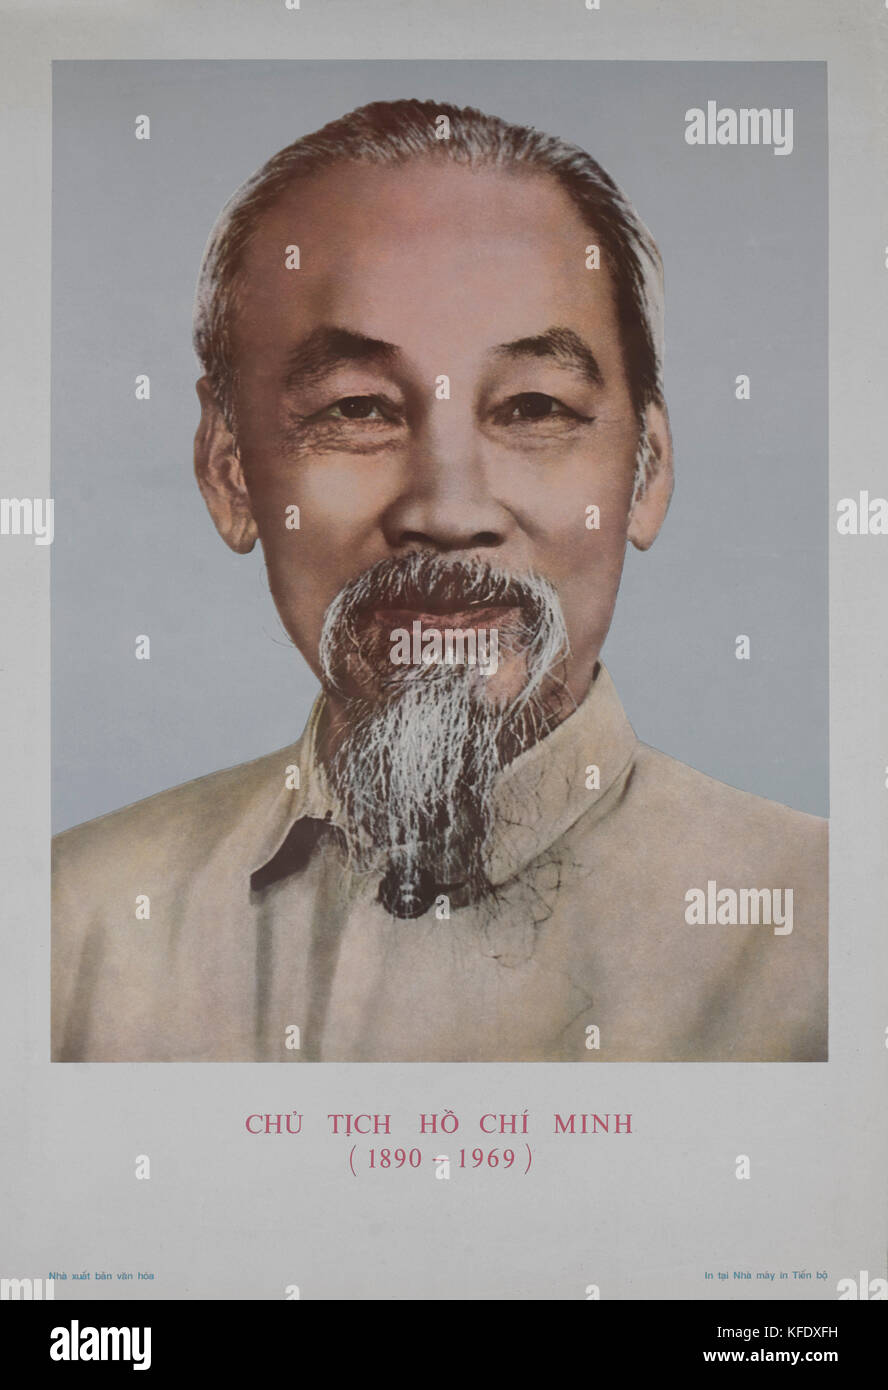 Ho chi minh (1890-1969), leader nationaliste vietnamien, portrait Banque D'Images